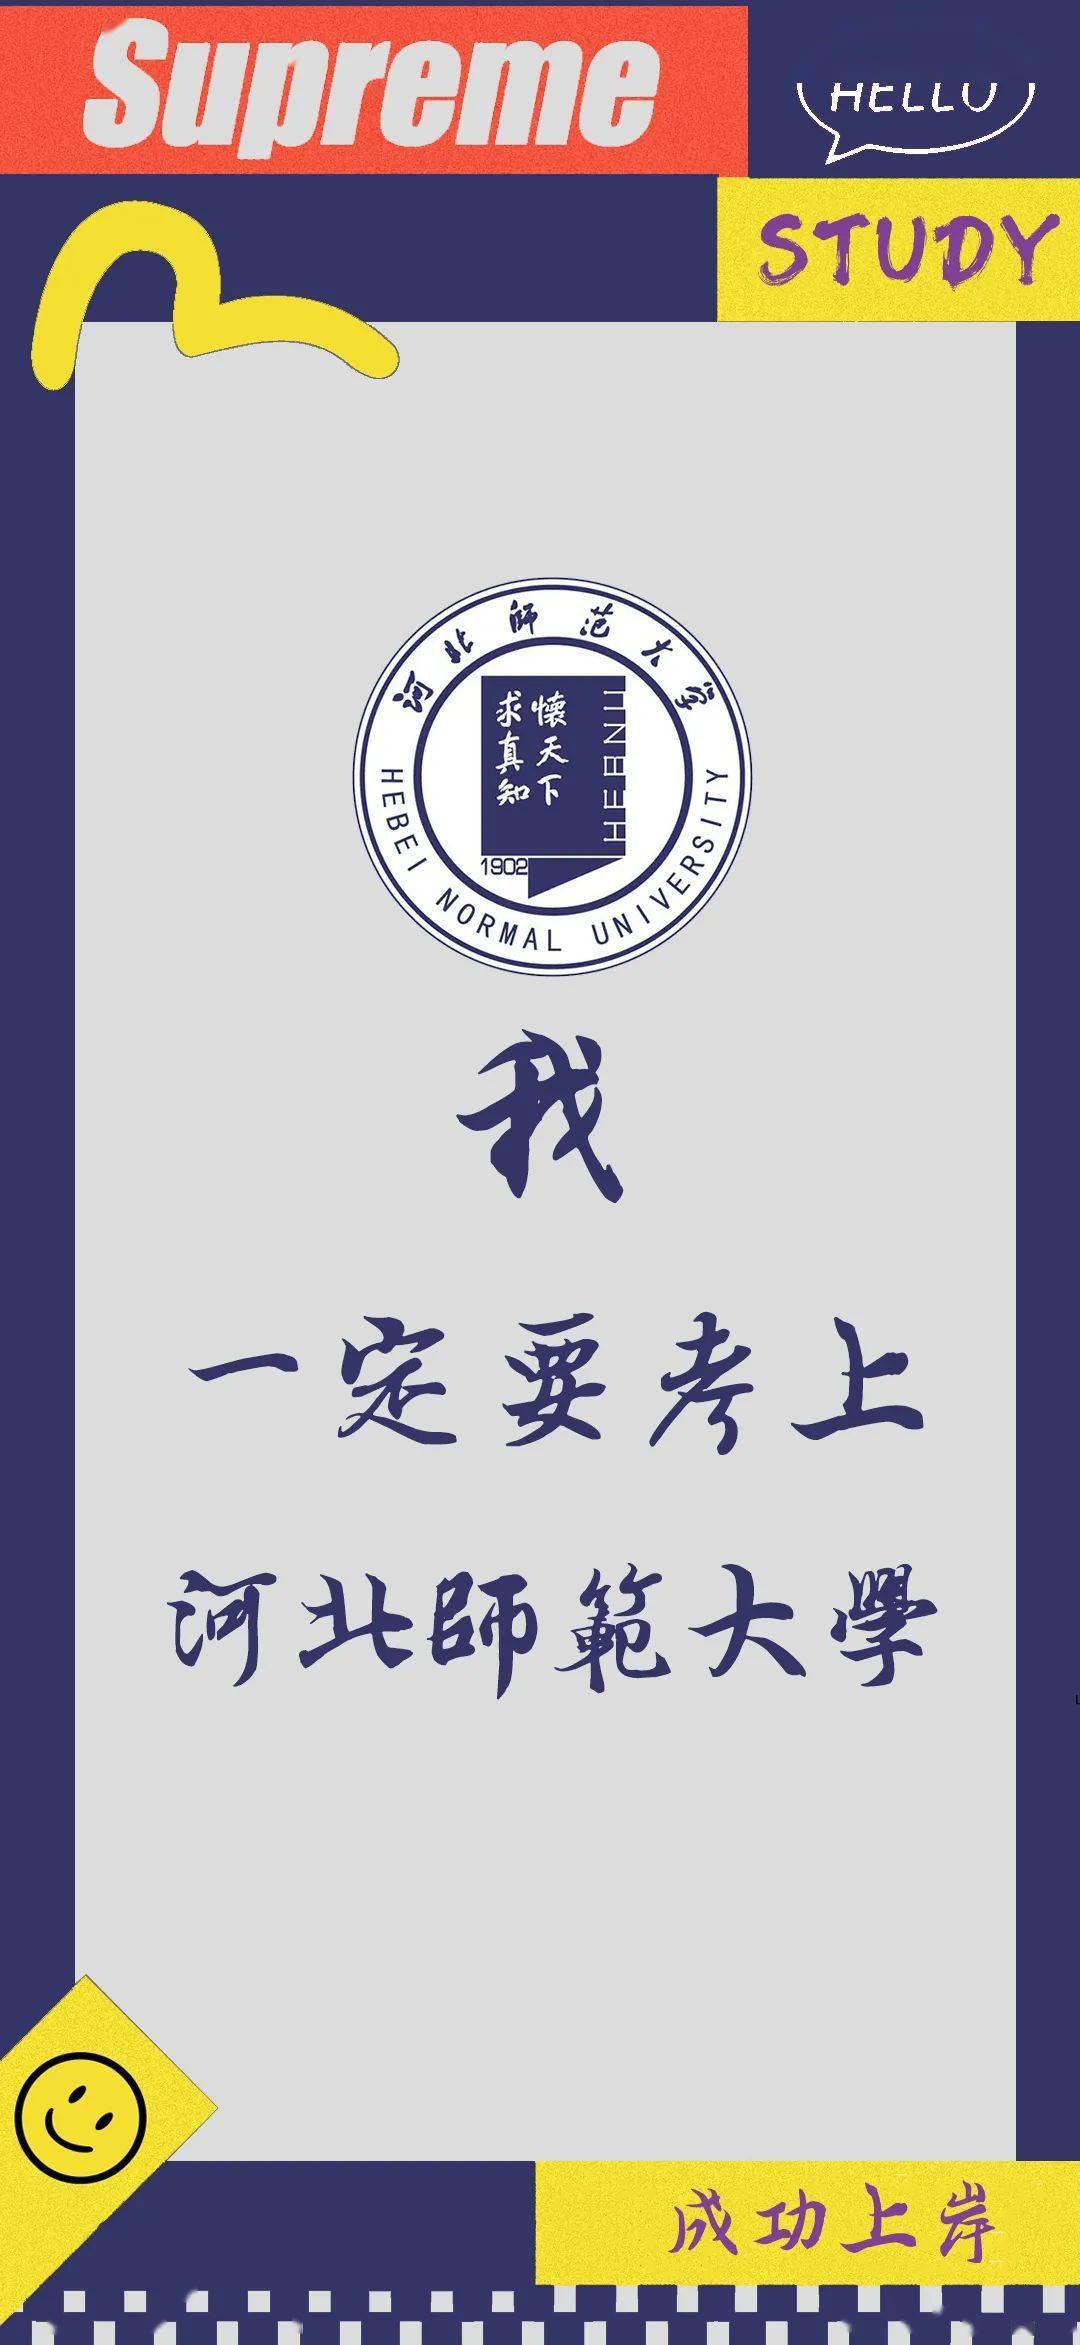 北京体育大学成都信息工程大学广西民族大学河北师范大学河北中医学院